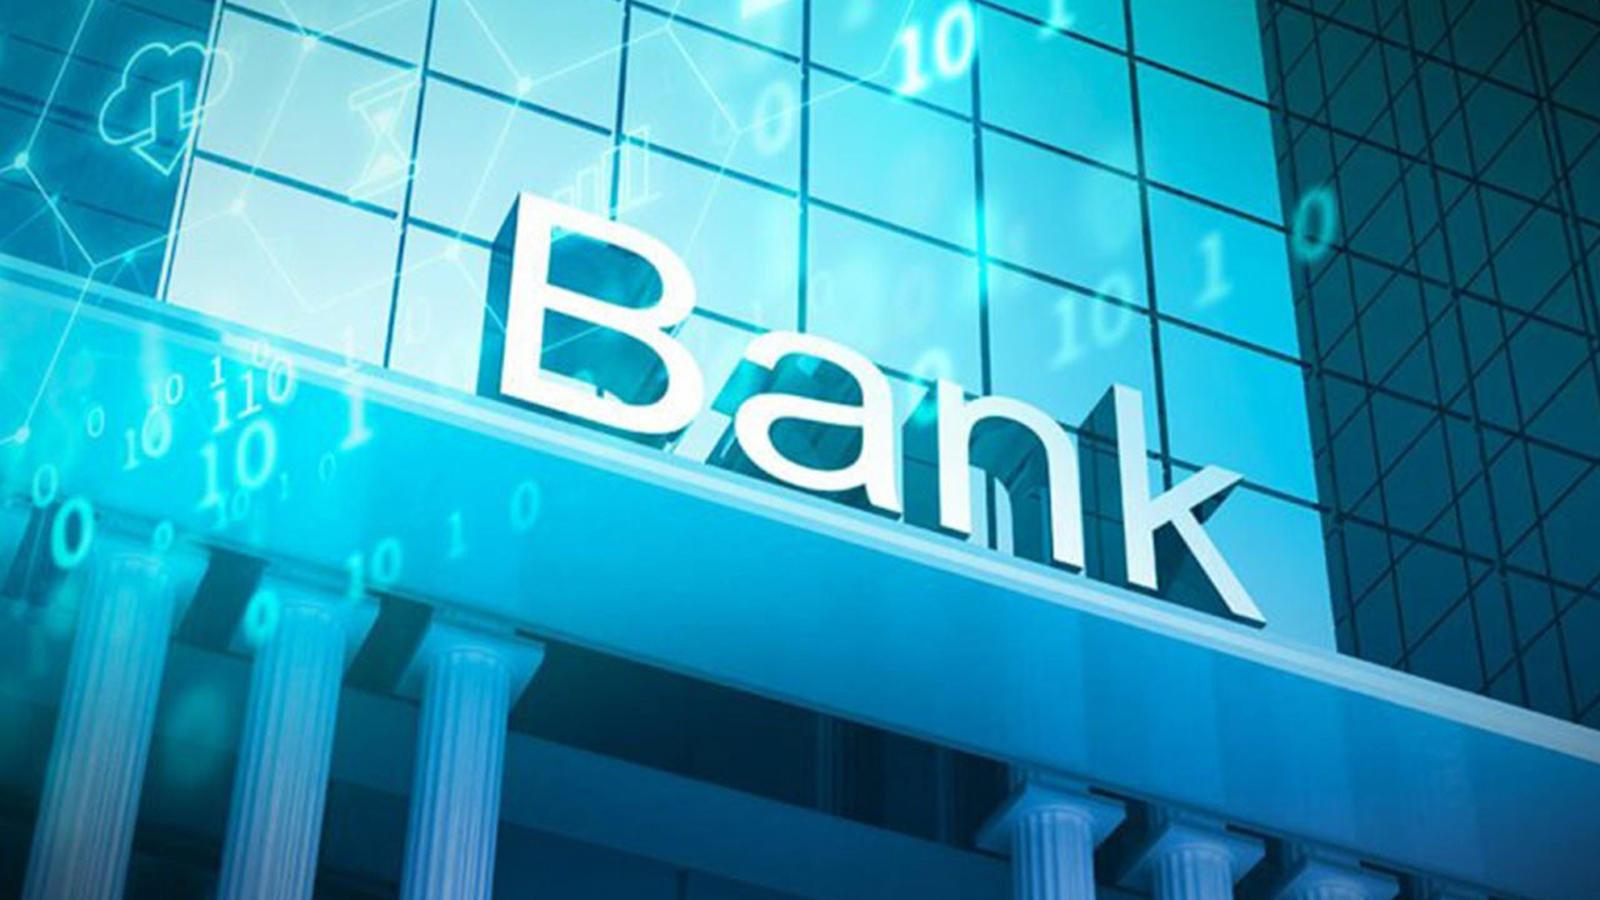 Bankalar Neden Hiç Batmaz?